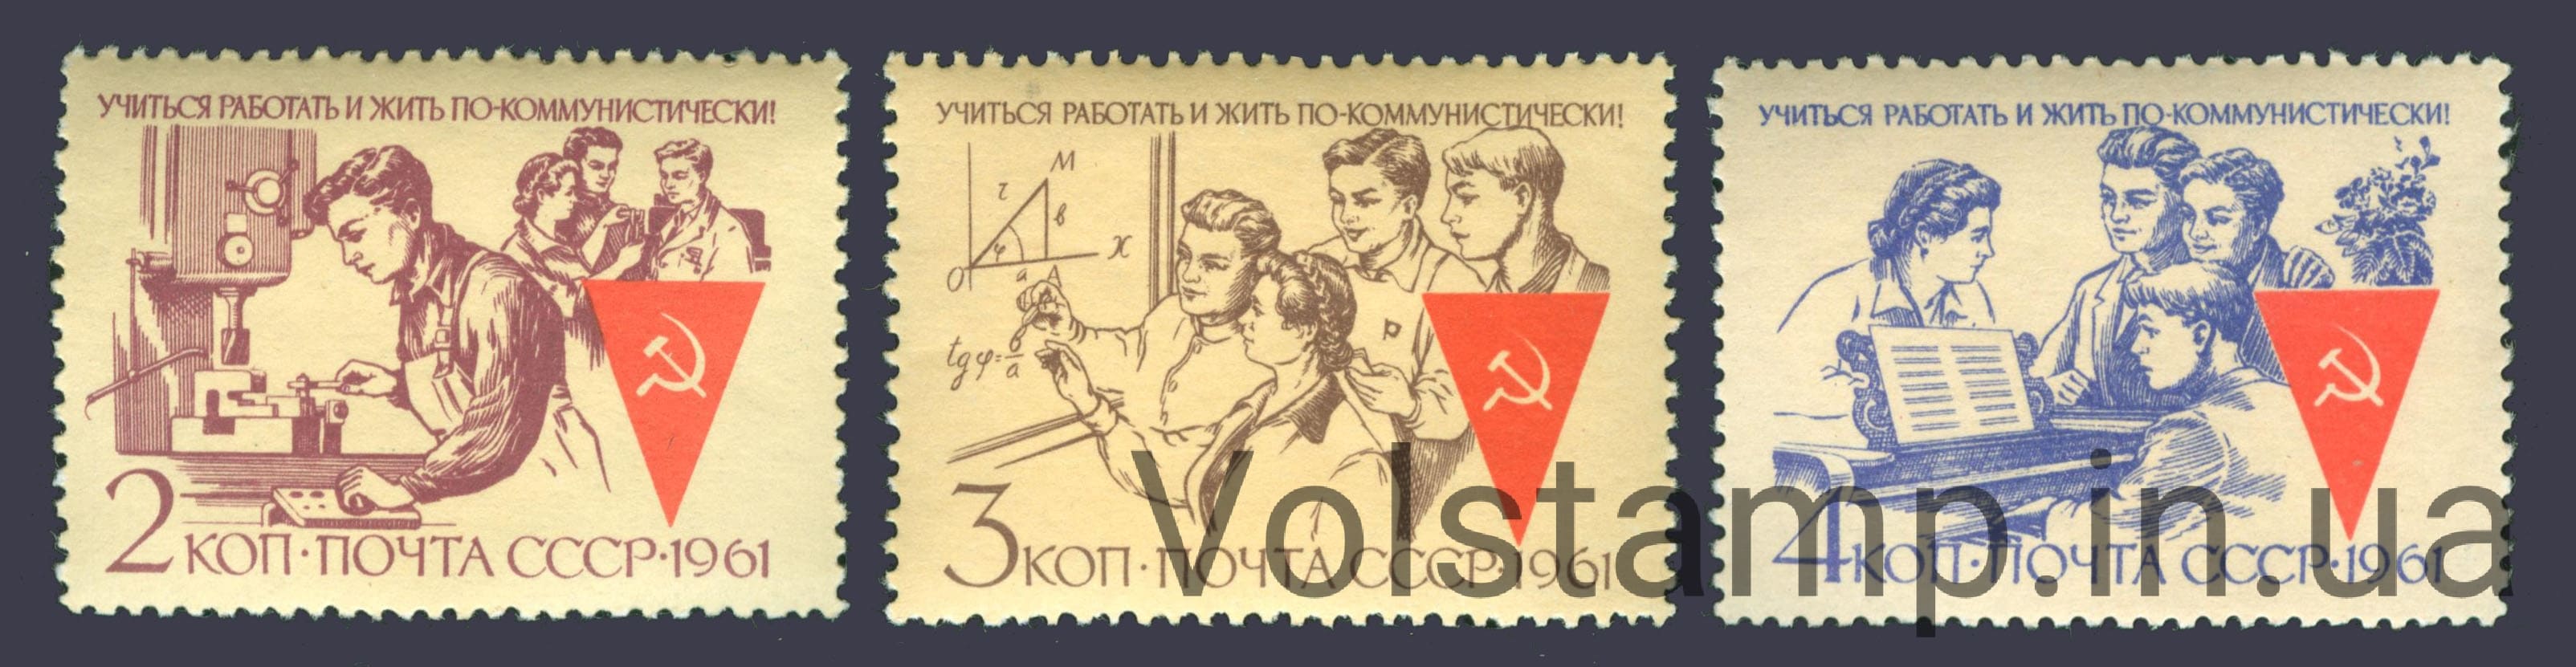 1961 серия марок Учиться, работать и жить по - коммунистически! №2539-2541